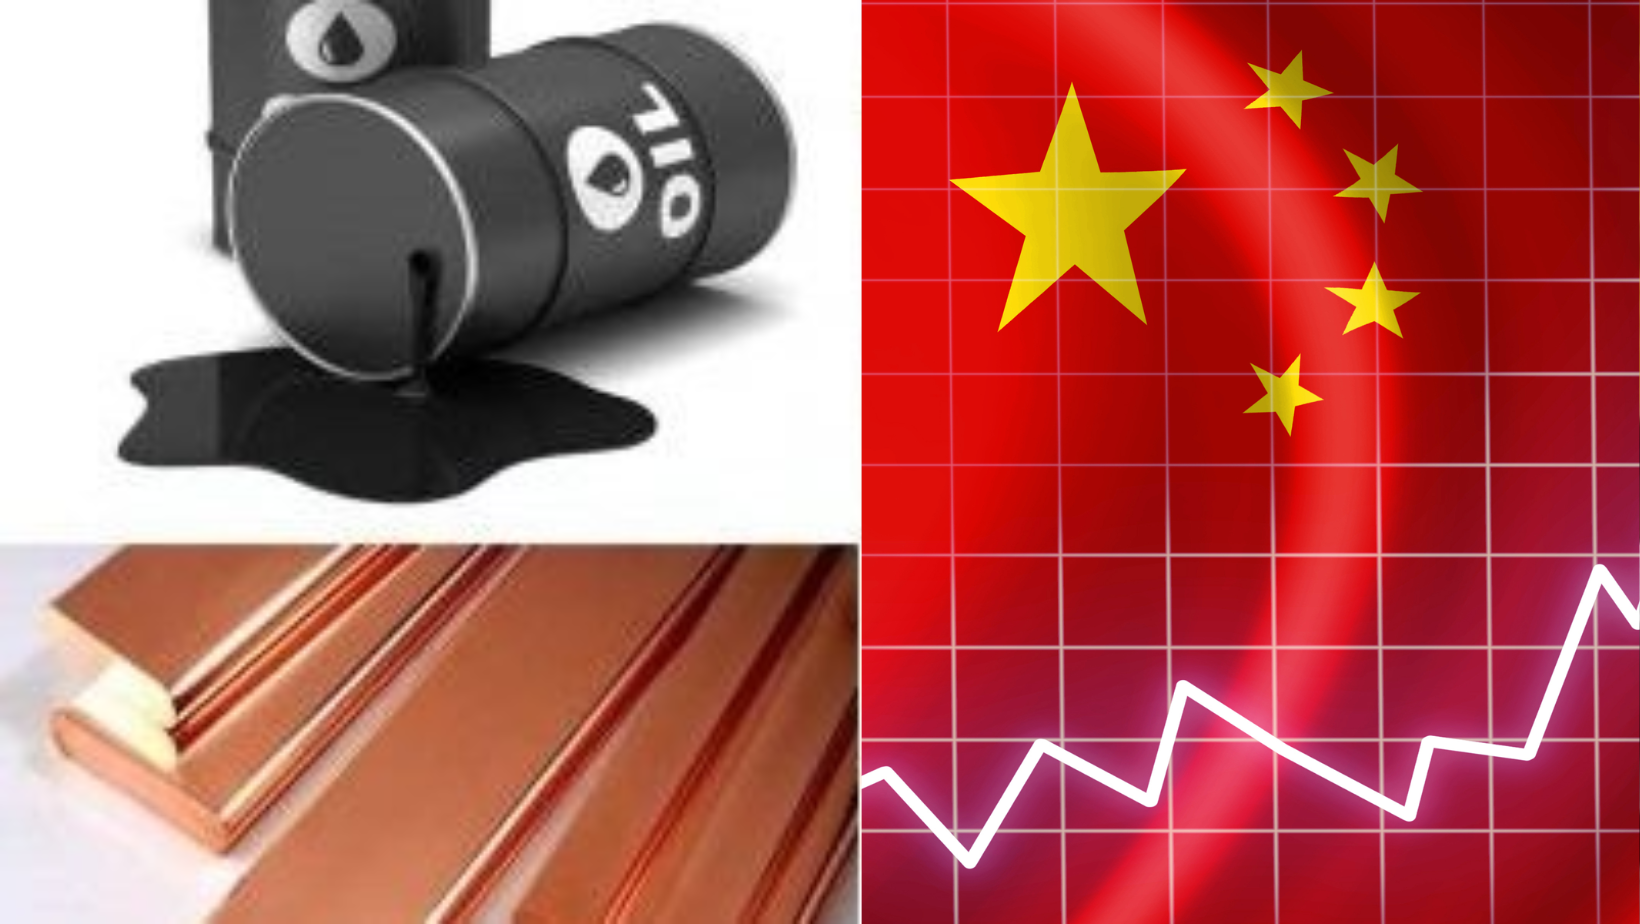 Sự hồi phục của nền kinh tế Trung Quốc chưa bền vững gây sức ép lên giá các kim loại và năng lượng